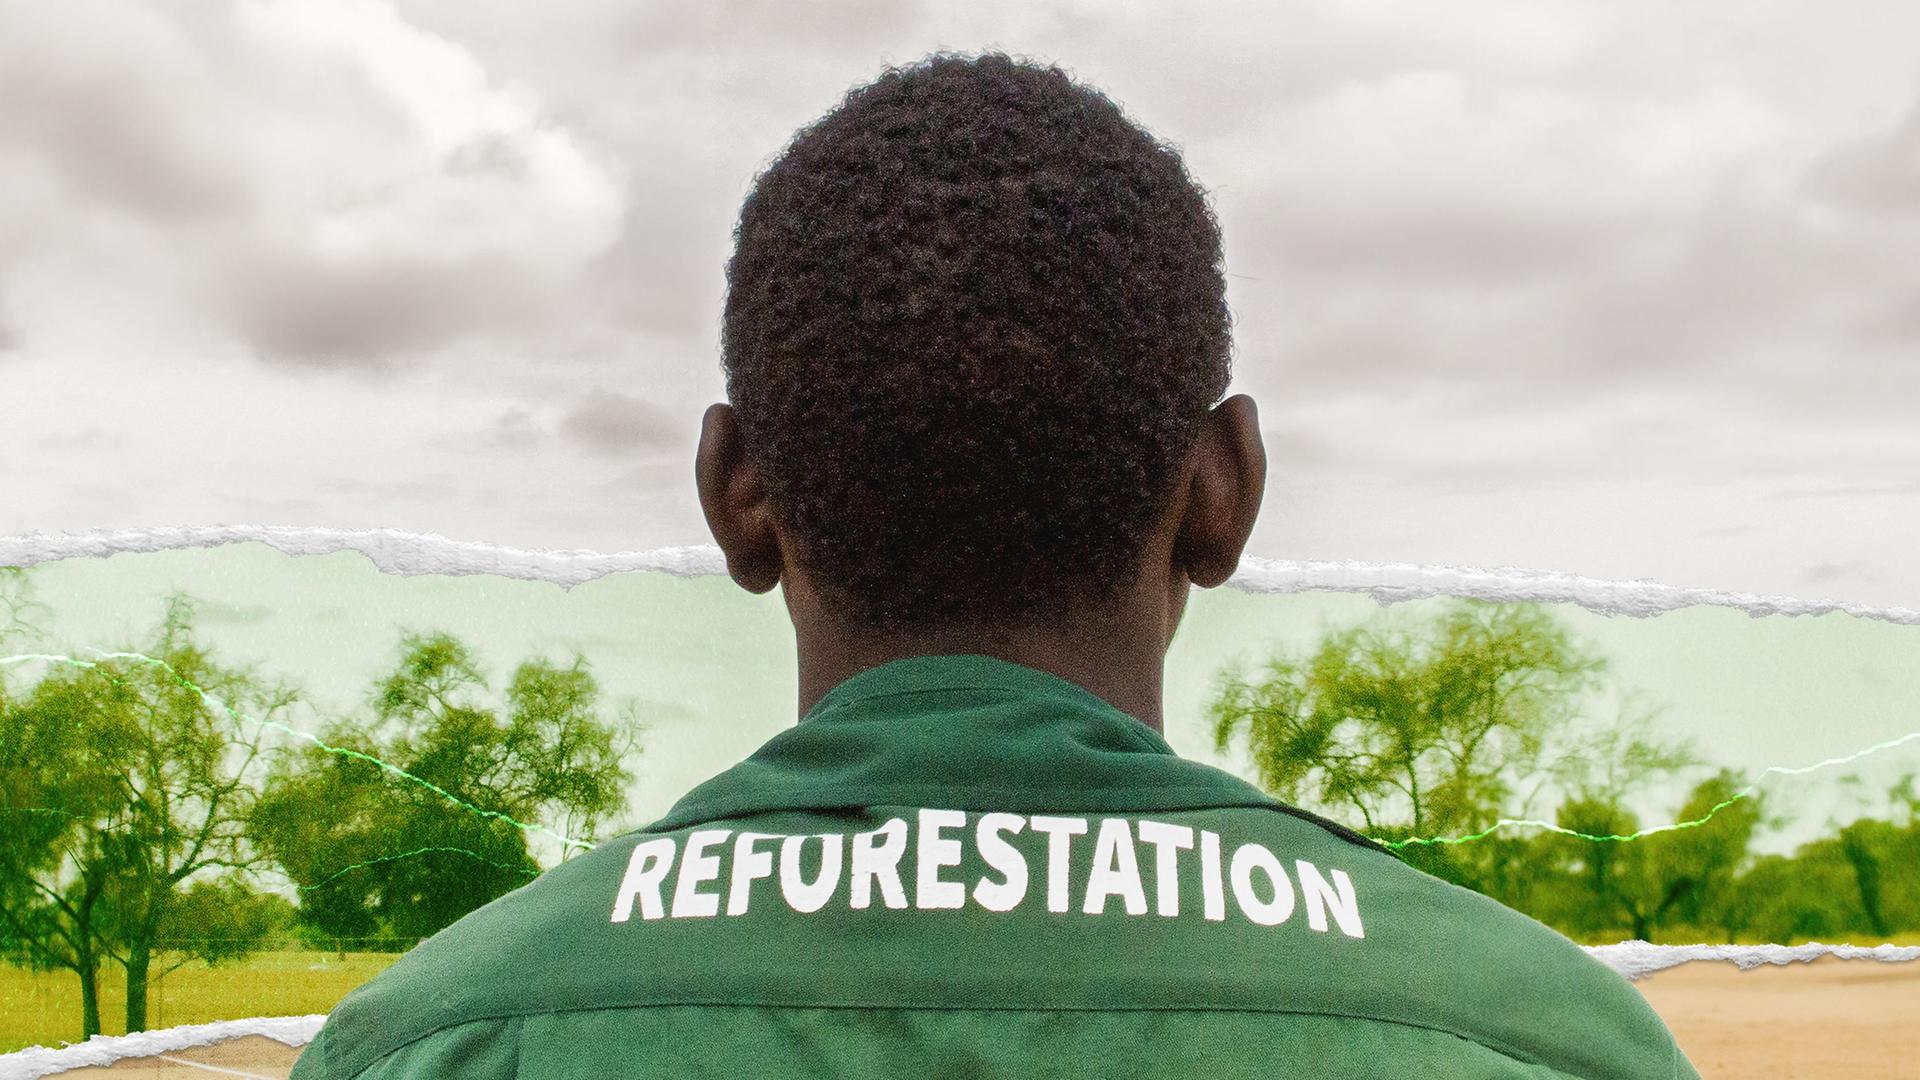 Ein Mitarbeiter der "Großen Grünen Mauer" mit einem Overall, auf dem das Wort "Reforestation" zu lesen ist